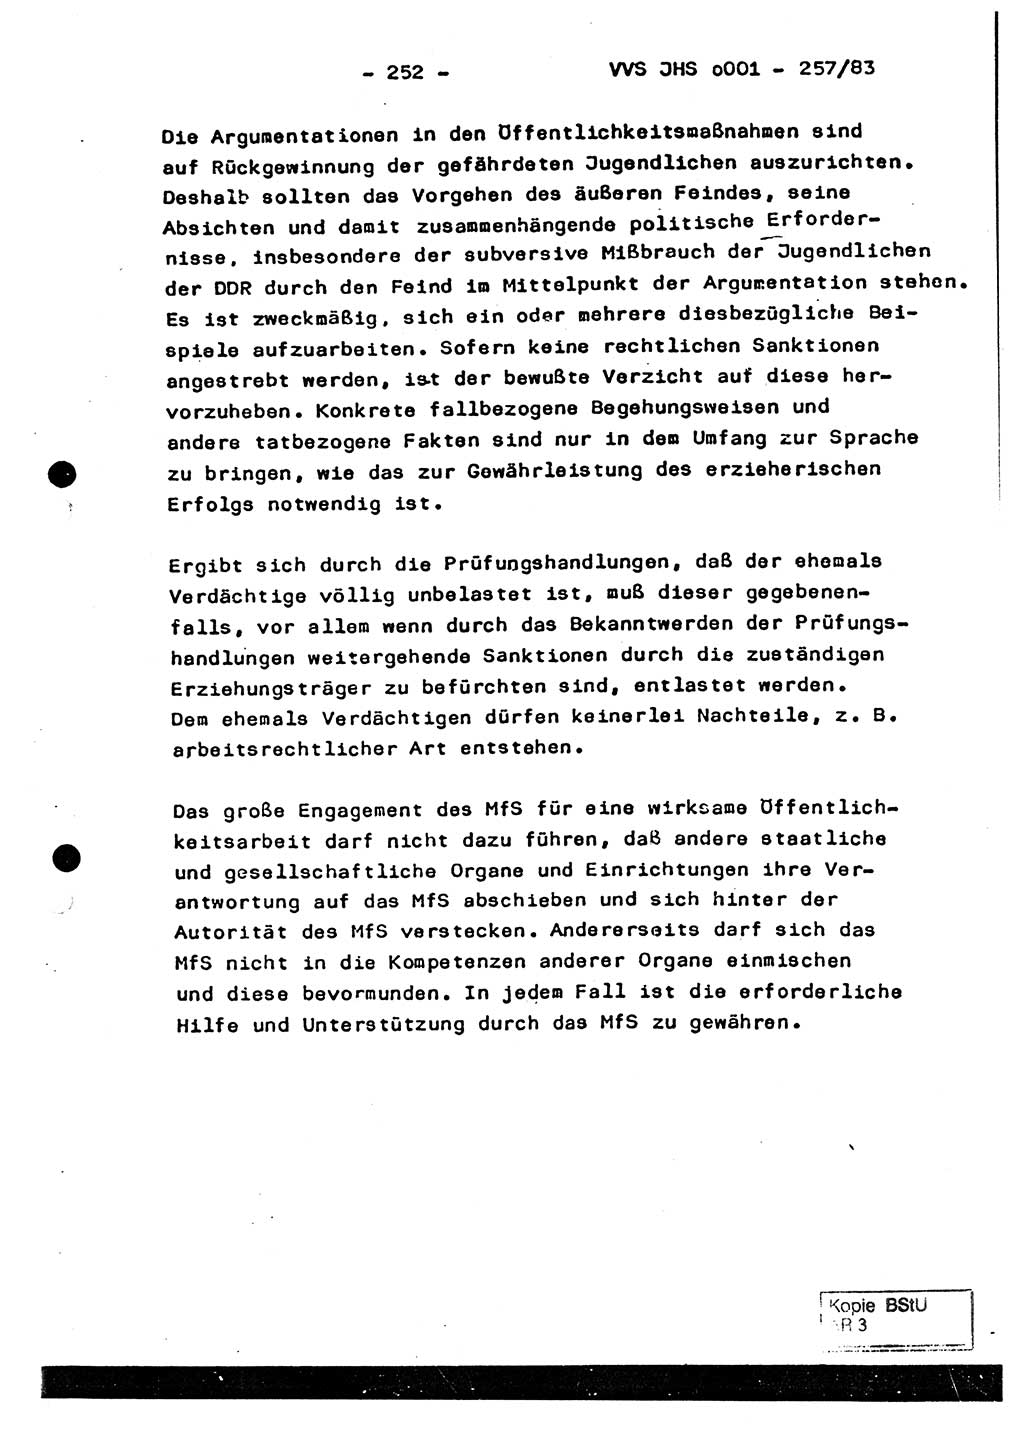 Dissertation, Oberst Helmut Lubas (BV Mdg.), Oberstleutnant Manfred Eschberger (HA IX), Oberleutnant Hans-Jürgen Ludwig (JHS), Ministerium für Staatssicherheit (MfS) [Deutsche Demokratische Republik (DDR)], Juristische Hochschule (JHS), Vertrauliche Verschlußsache (VVS) o001-257/83, Potsdam 1983, Seite 252 (Diss. MfS DDR JHS VVS o001-257/83 1983, S. 252)